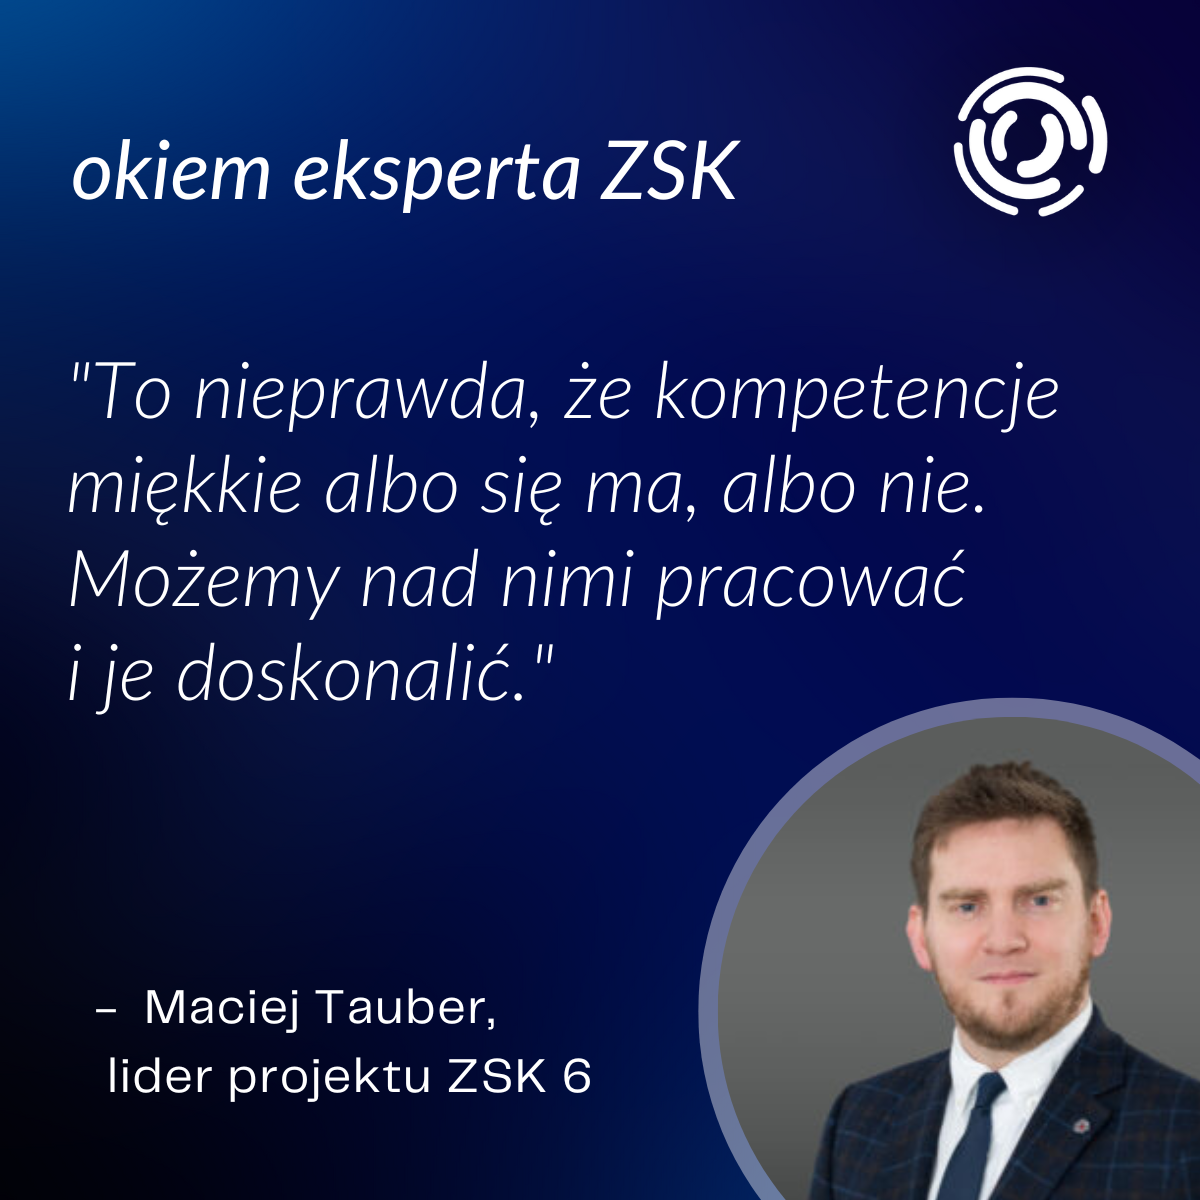 Maciej Tauber, lider projektu ZSK 6, cytat: "To nieprawda, że kompetencje miękkie albo się ma, albo nie. Możemy nad nimi pracować i je doskonalić"